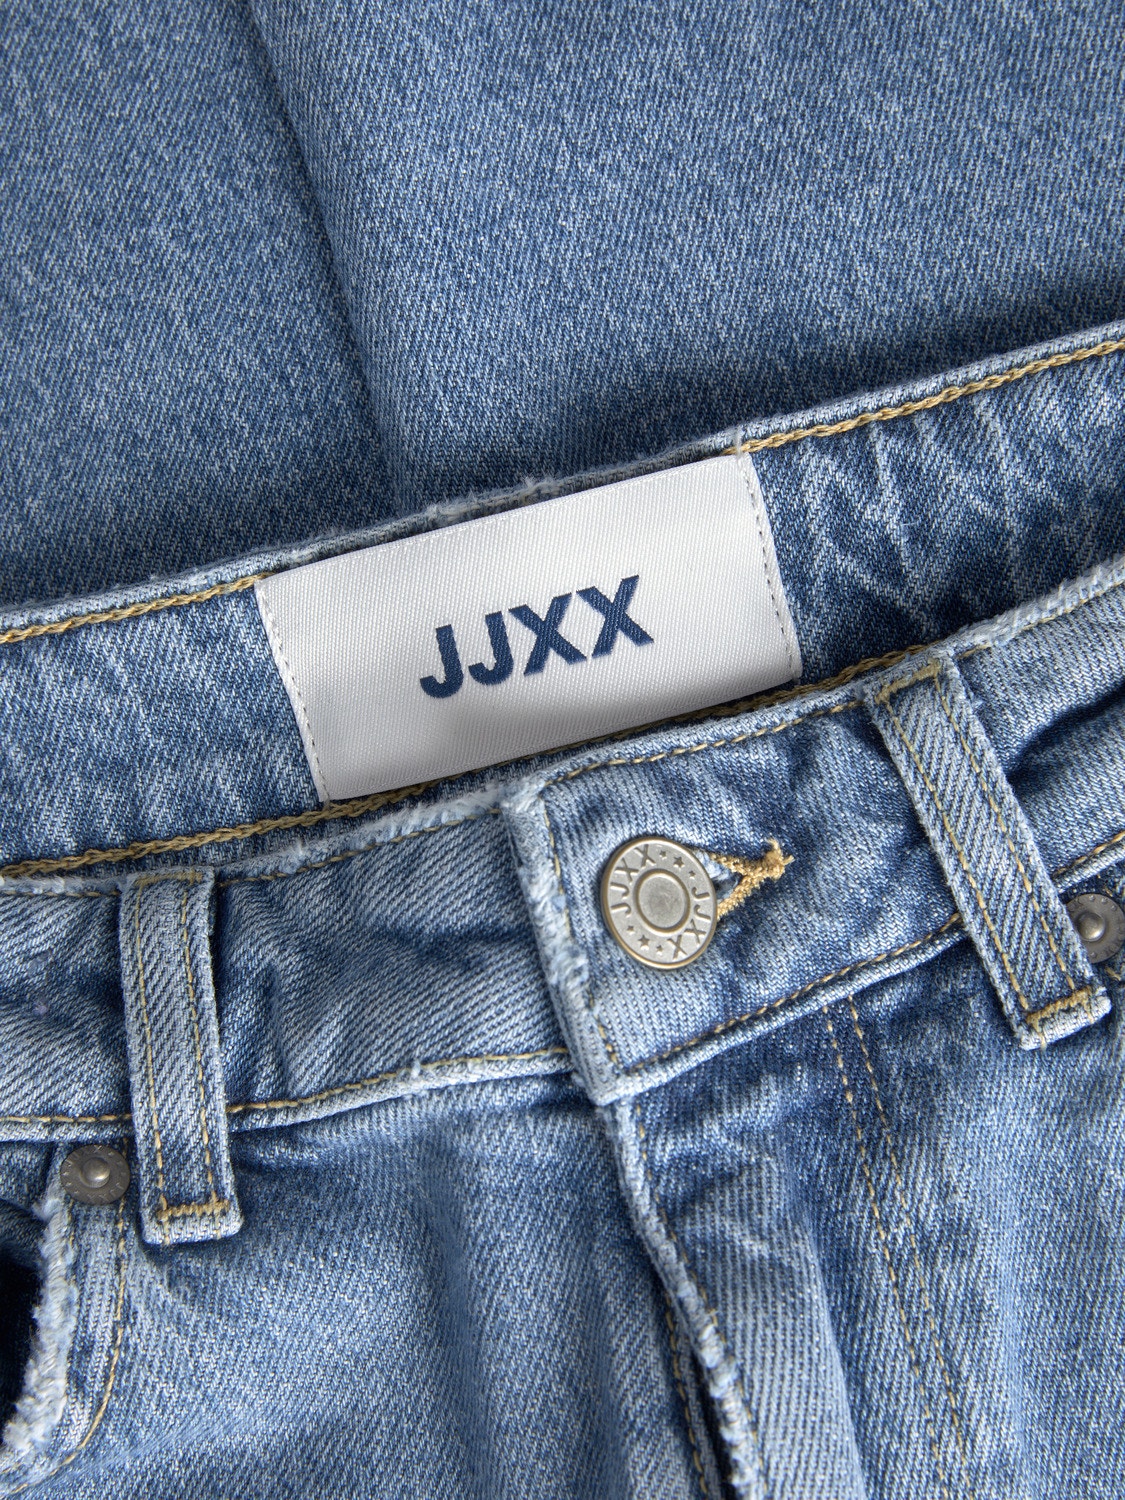 JJXX JXTURIN BOOTCUT HW CC7006 -Medium Blue Denim - 12217368